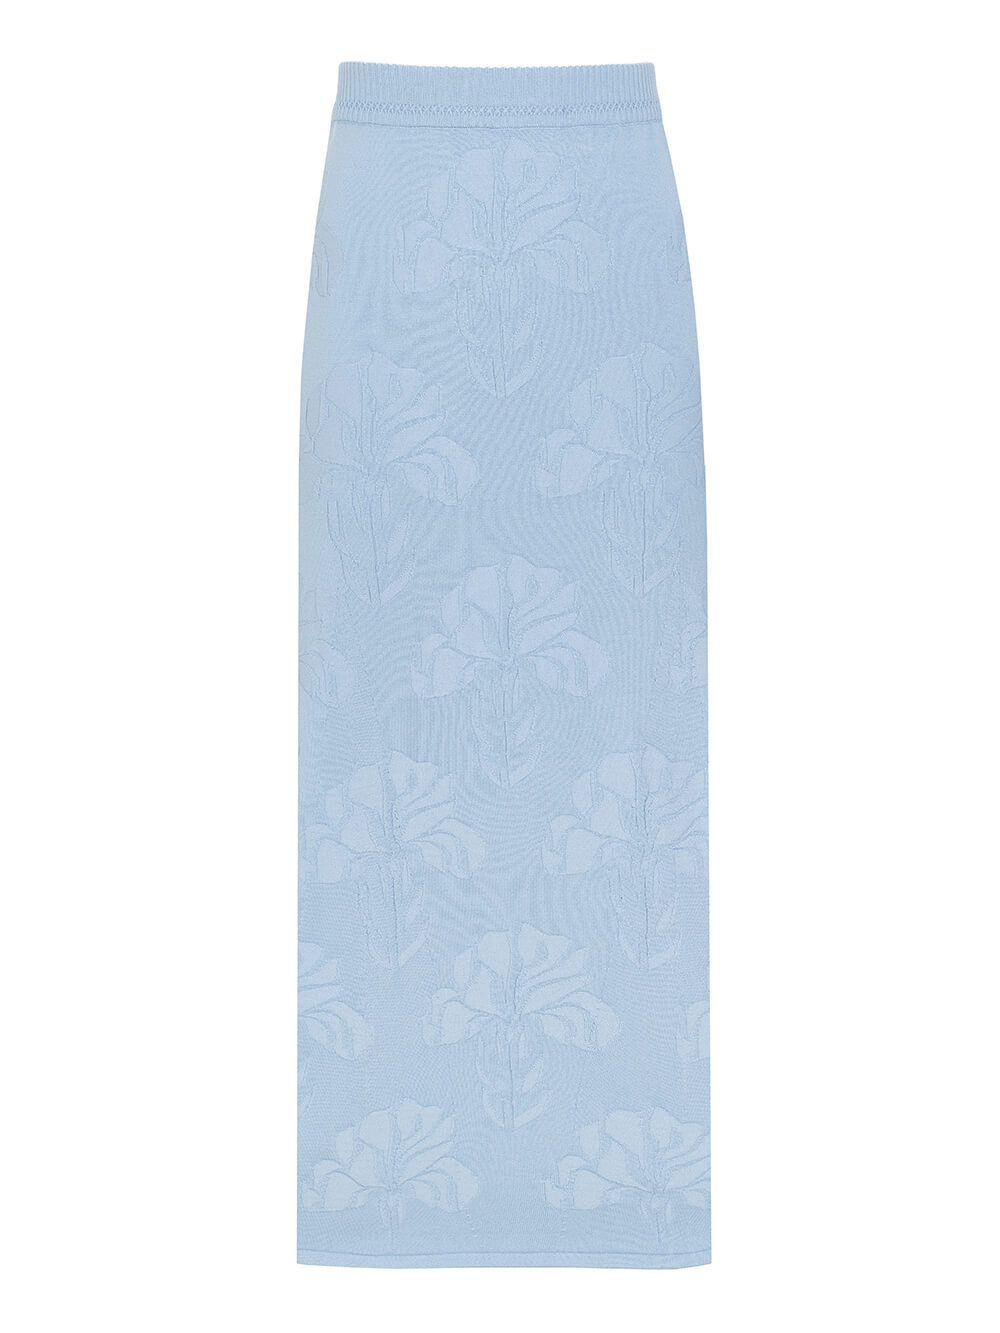 Женская юбка голубого цвета из шелка и вискозы - фото 1